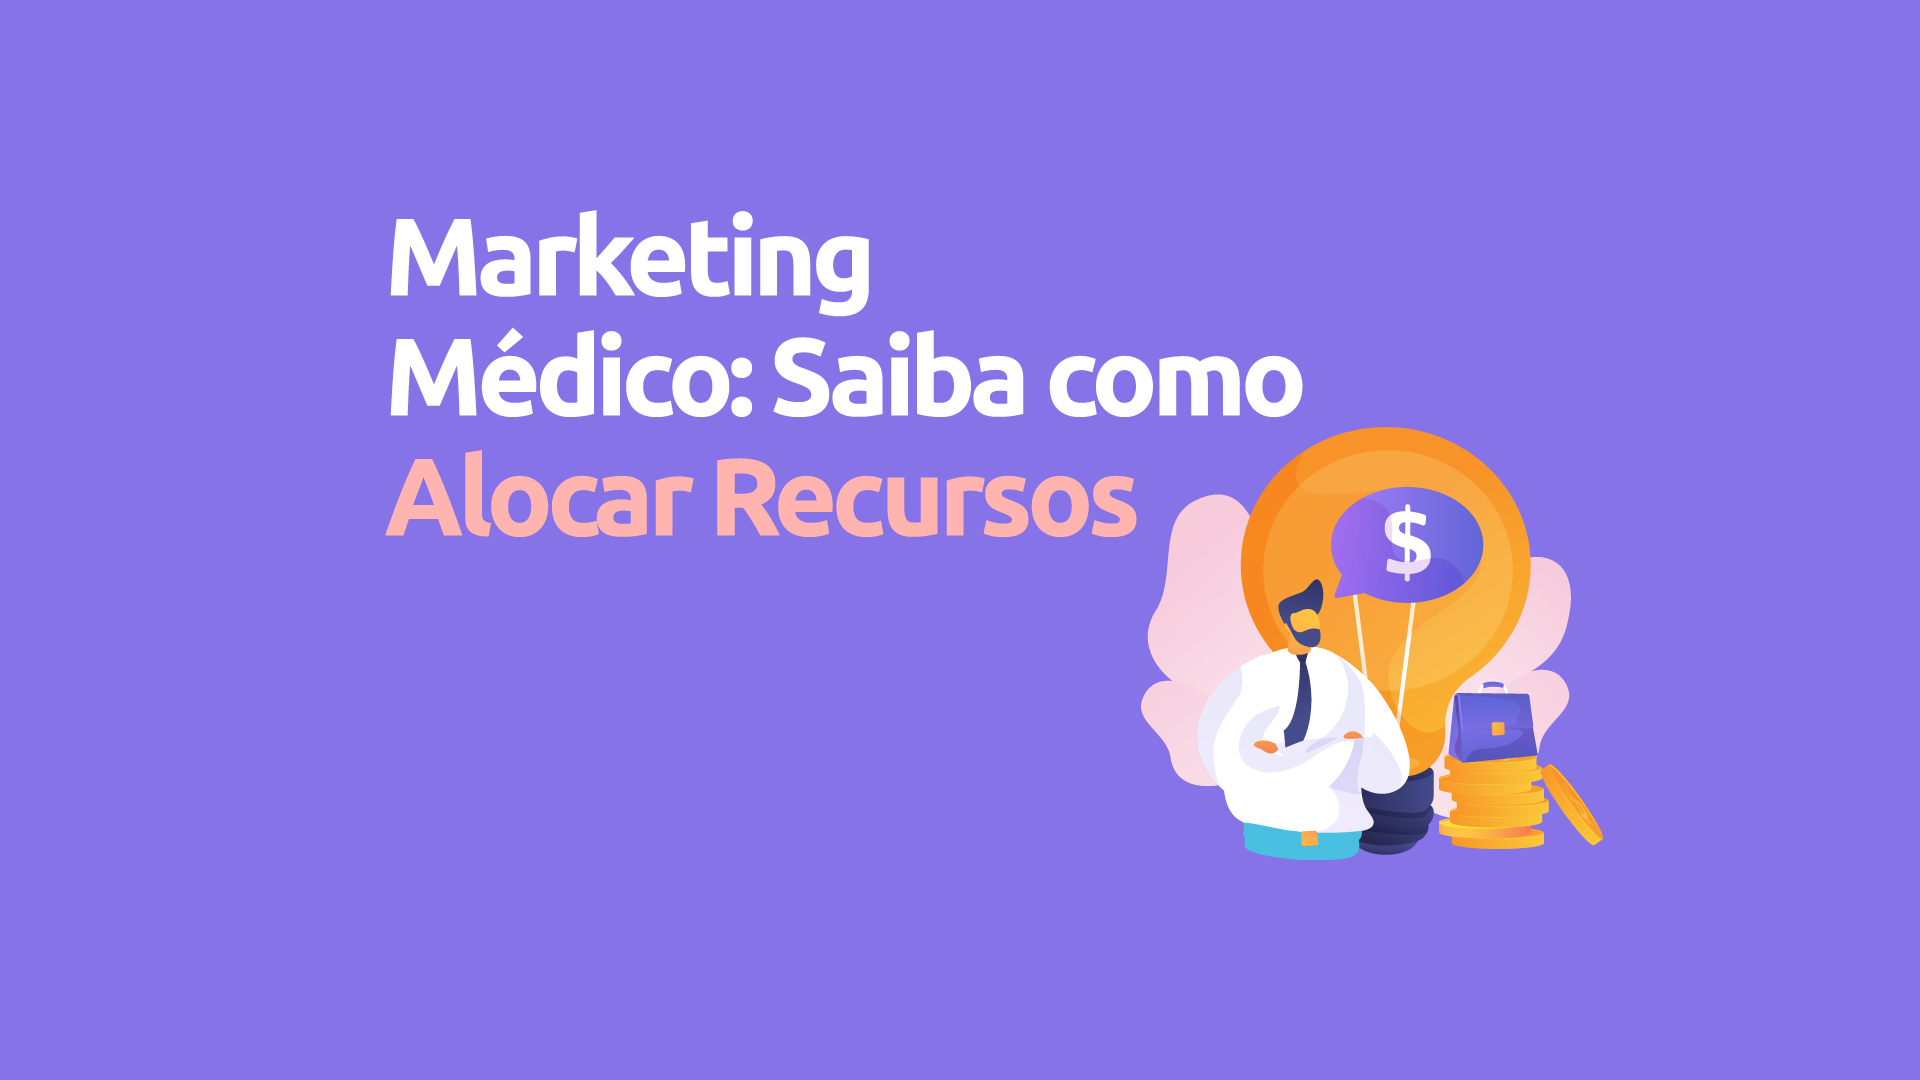 Marketing médico: saiba como alocar recursos com 500, 1000, 2000 e 5000 reais